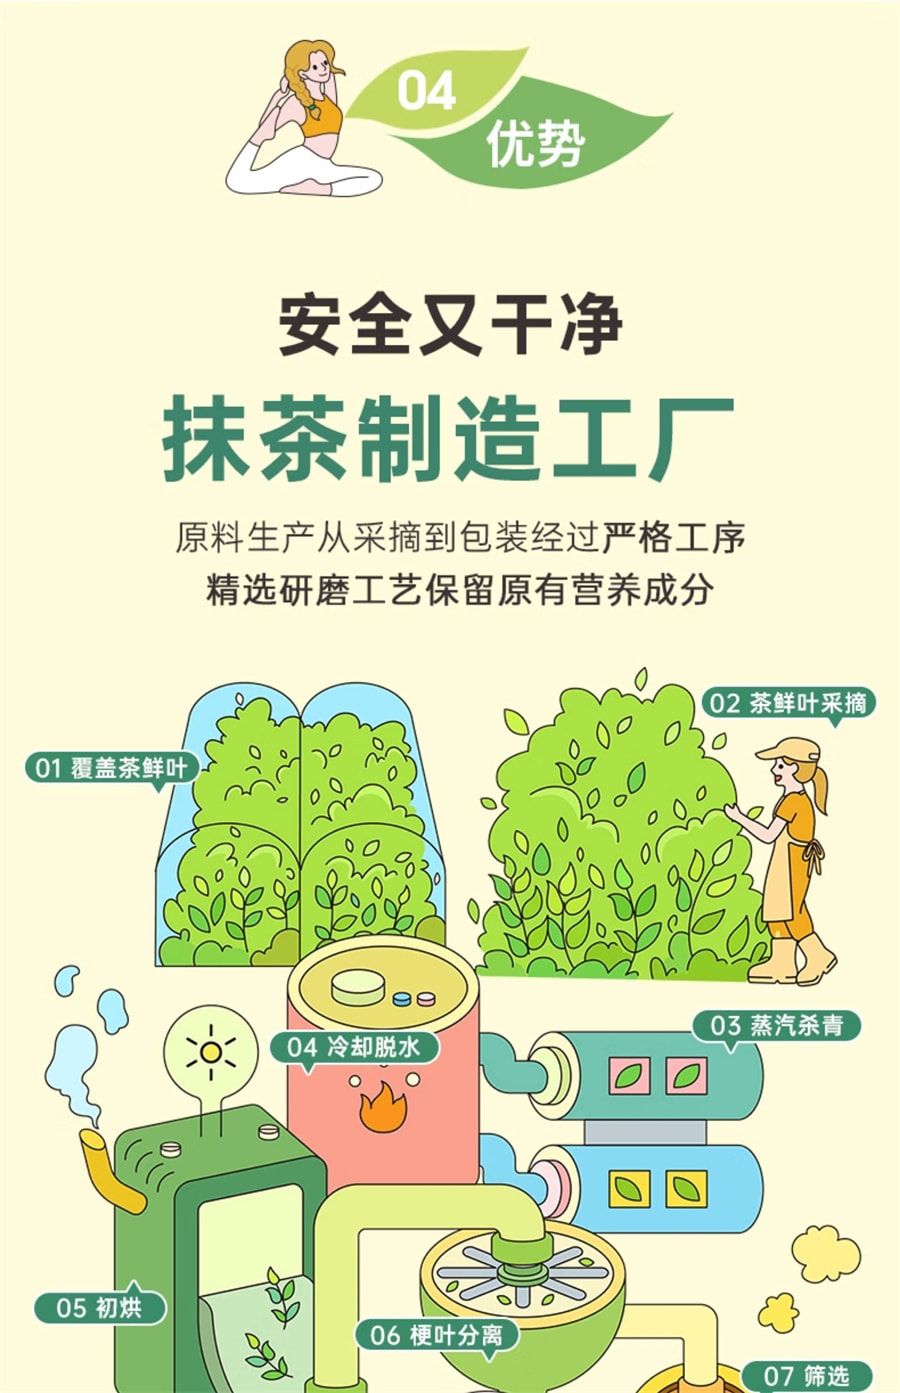 【中国直邮】自律农场  纯抹茶粉超级食物无添加蔗糖运动助能点茶冲饮  120/袋